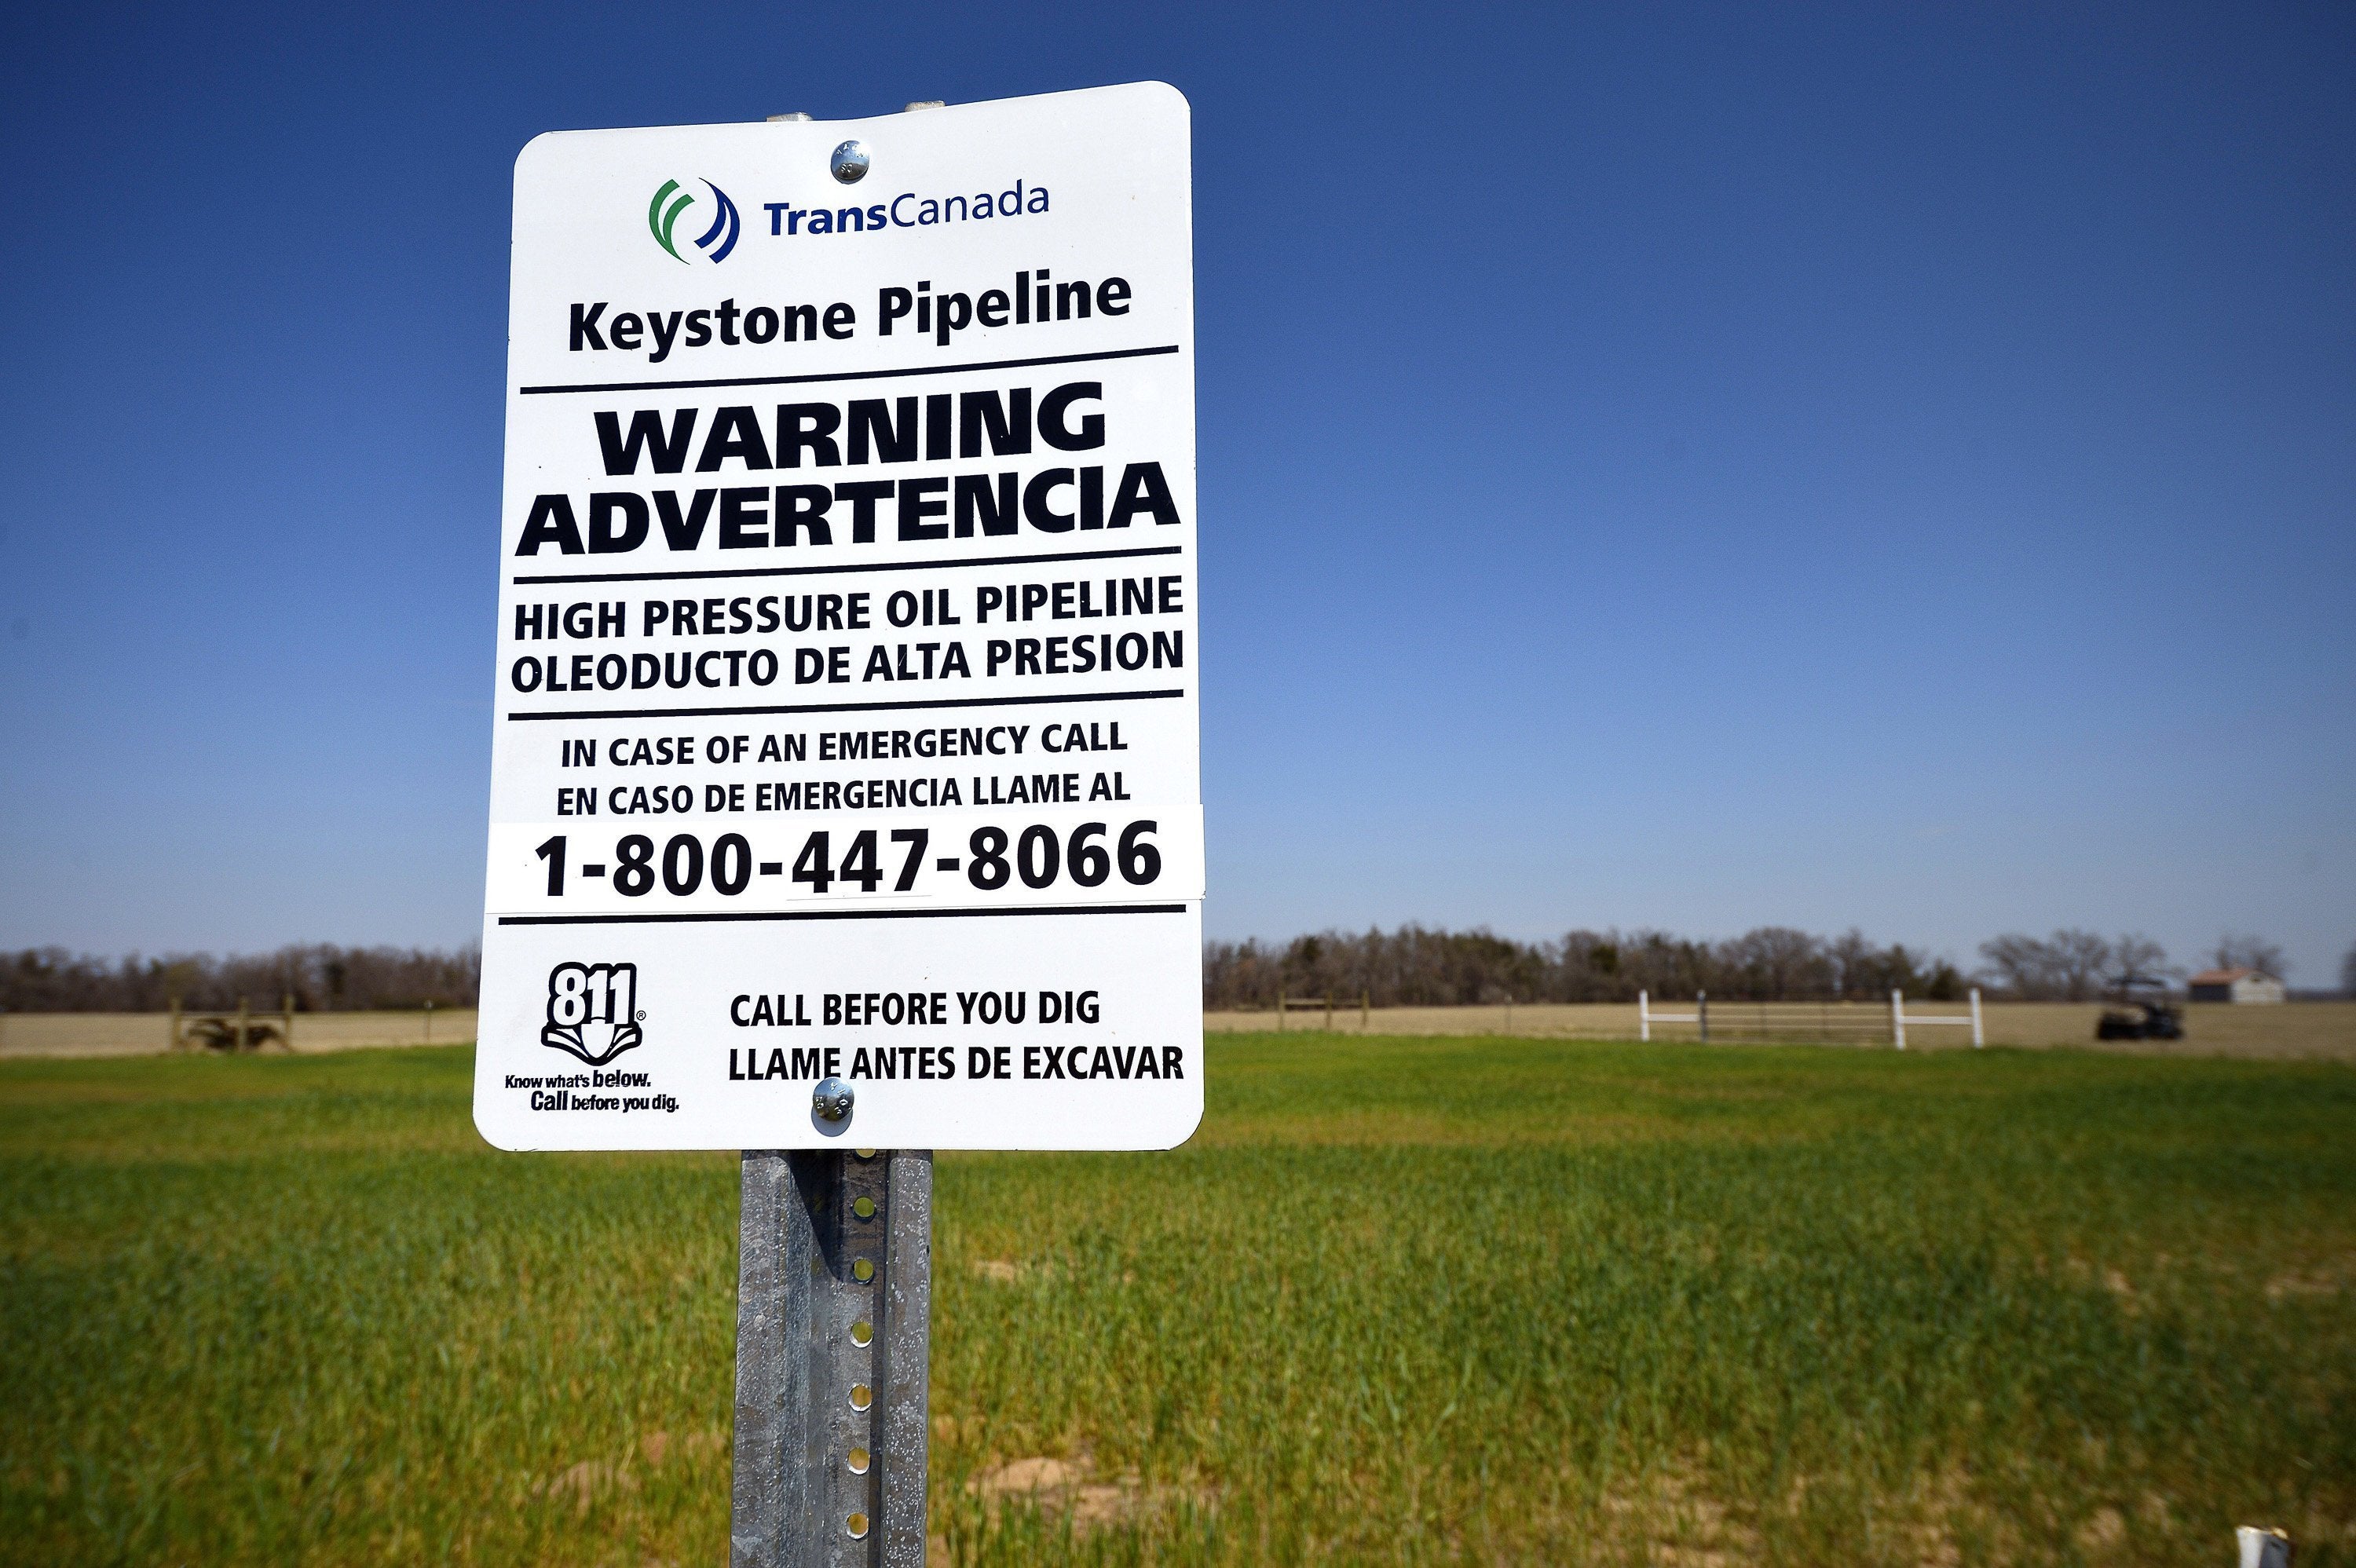 Keystone Pipeline Leaks 210,000 Gallons Of Oil In South Dakota